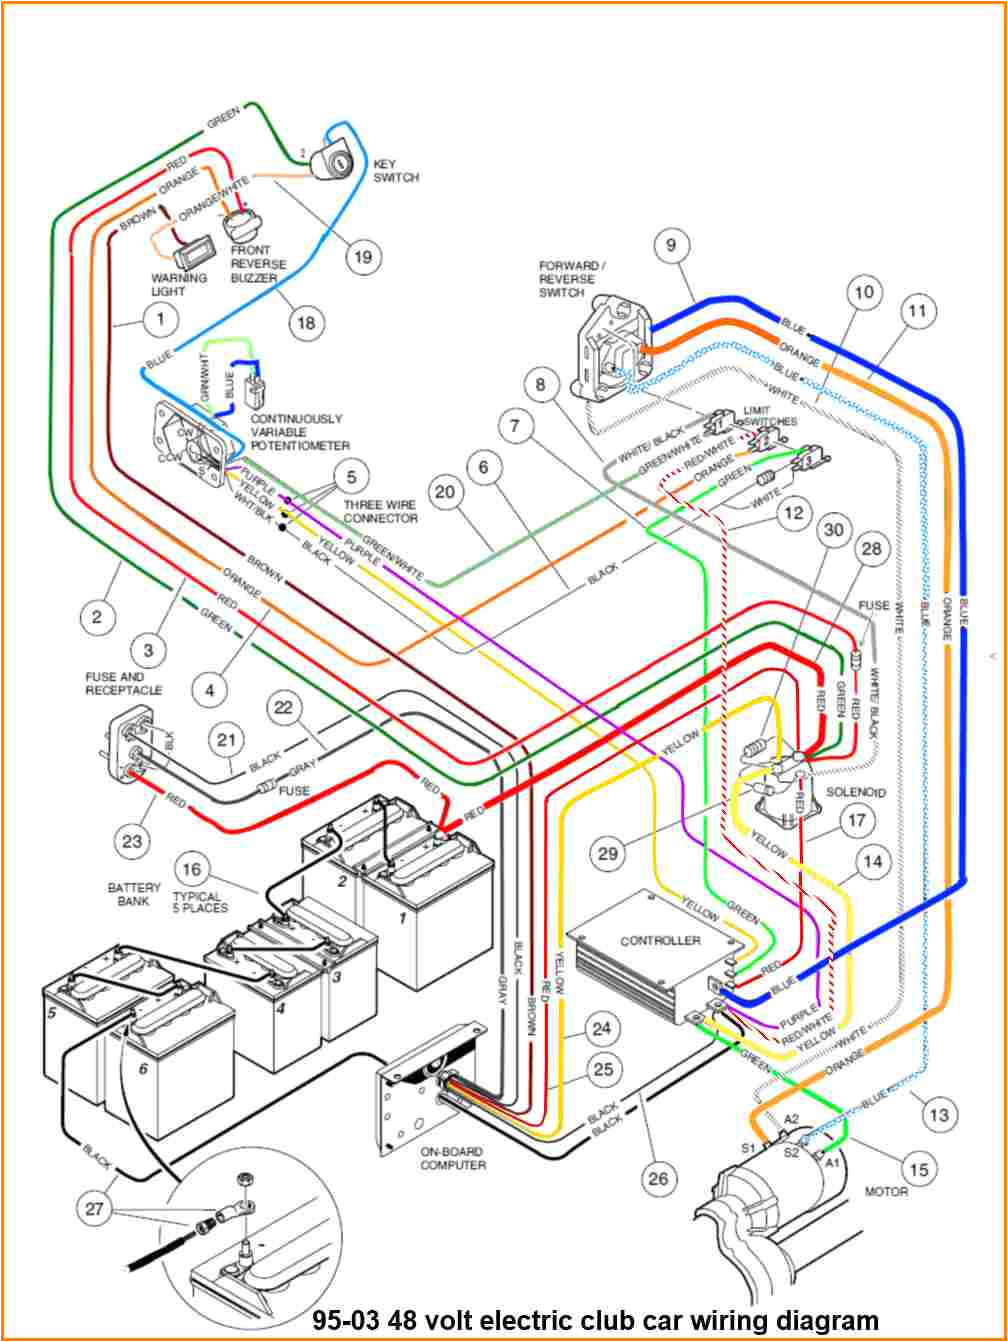 for a 1997 club car headlight wiring wiring diagram inside2001 club car headlight wiring diagram wiring